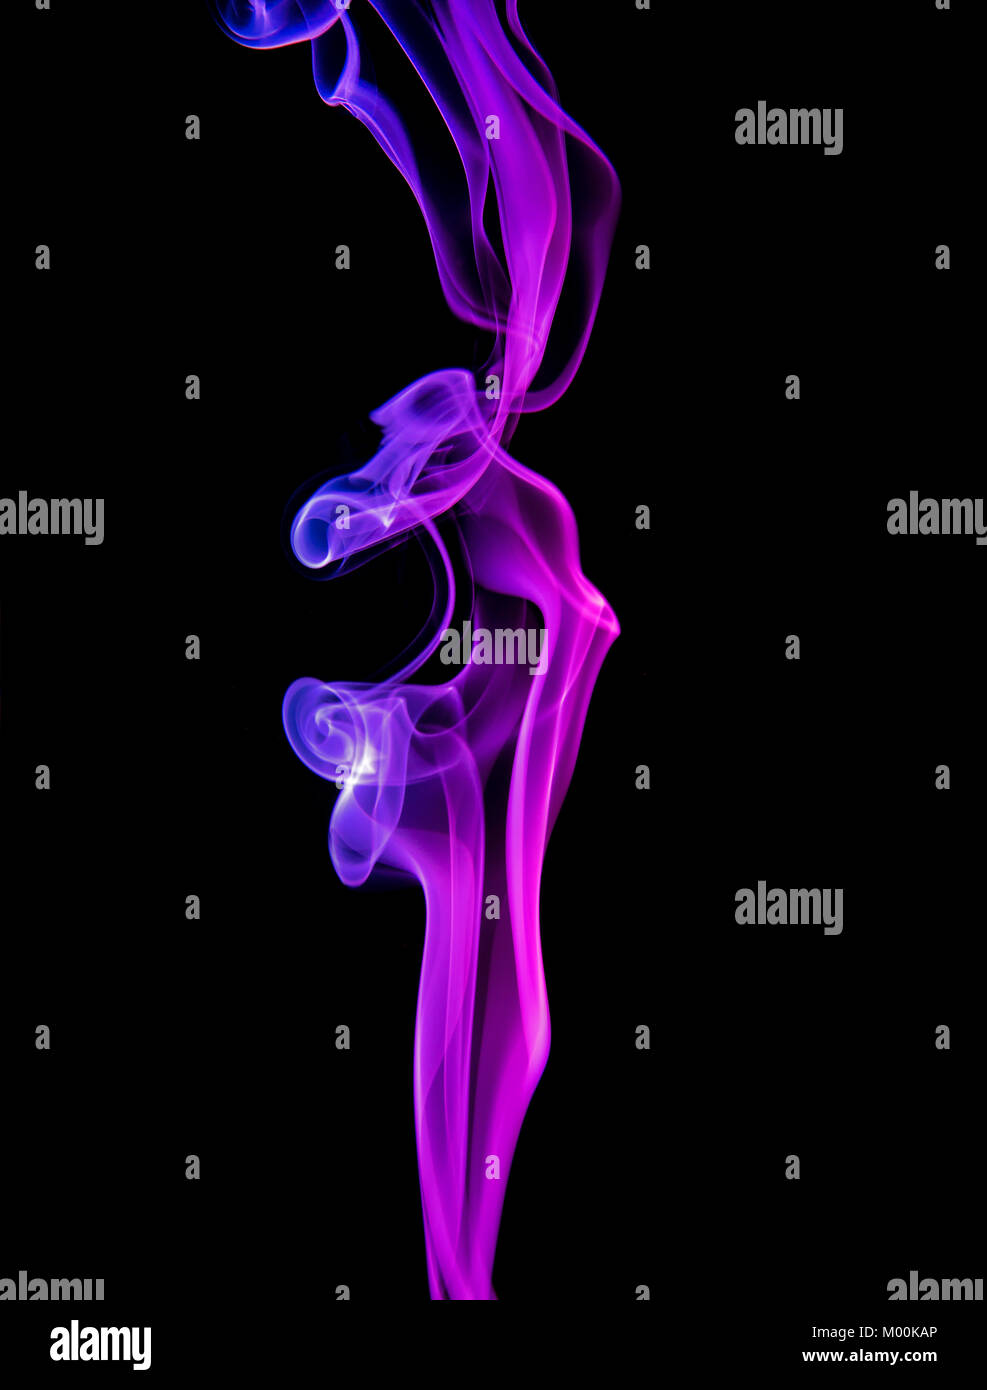 Un isolato la colonna verticale di fumo colorato che mostra in rosso e riflessi violacei avente sia scientifico e fascino artistico come pure la copia in bianco e nero di spazio Foto Stock